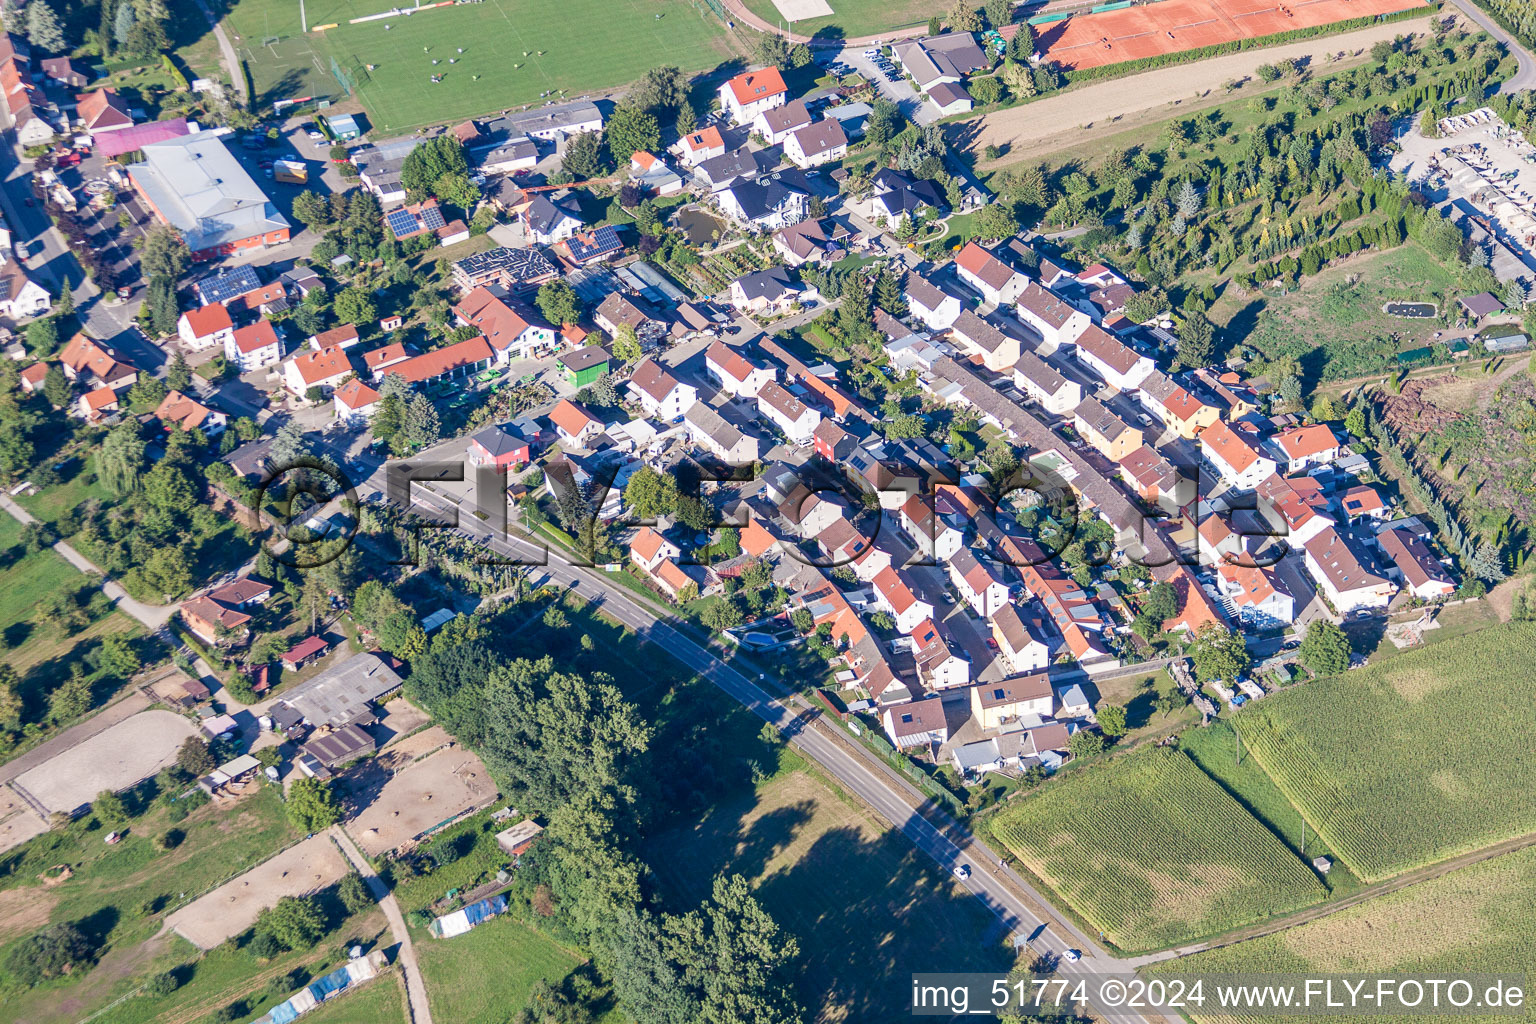 Vue aérienne de Quartier Hopfenweg dans l'aire urbaine dans le quartier Liedolsheim à Dettenheim à Liedolsheim dans le département Bade-Wurtemberg, Allemagne